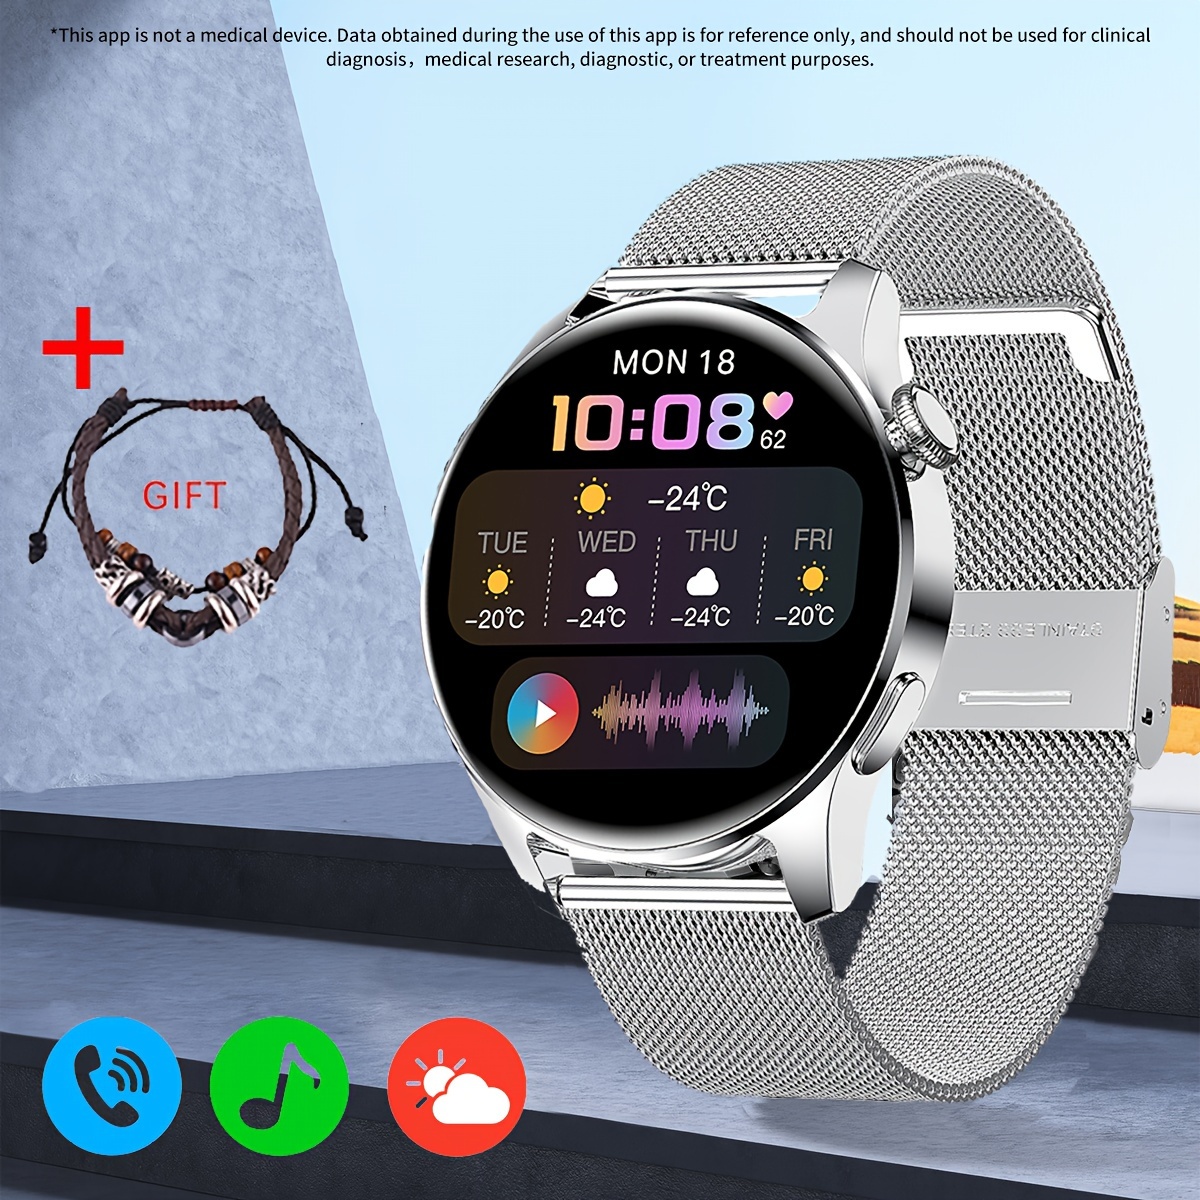 ساعة ذكية (الرد / إجراء مكالمة) ، شاشة عرض ملونة دائرية بقياس 1.28 بوصة مع مقياس الخطى / استهلاك السعرات الحرارية / تسجيل المسار / وقت التمرين / تشغيل الموسيقى / وضعيات رياضية متعددة / ساعات مقاومة للماء لنظامي Android و Iphone